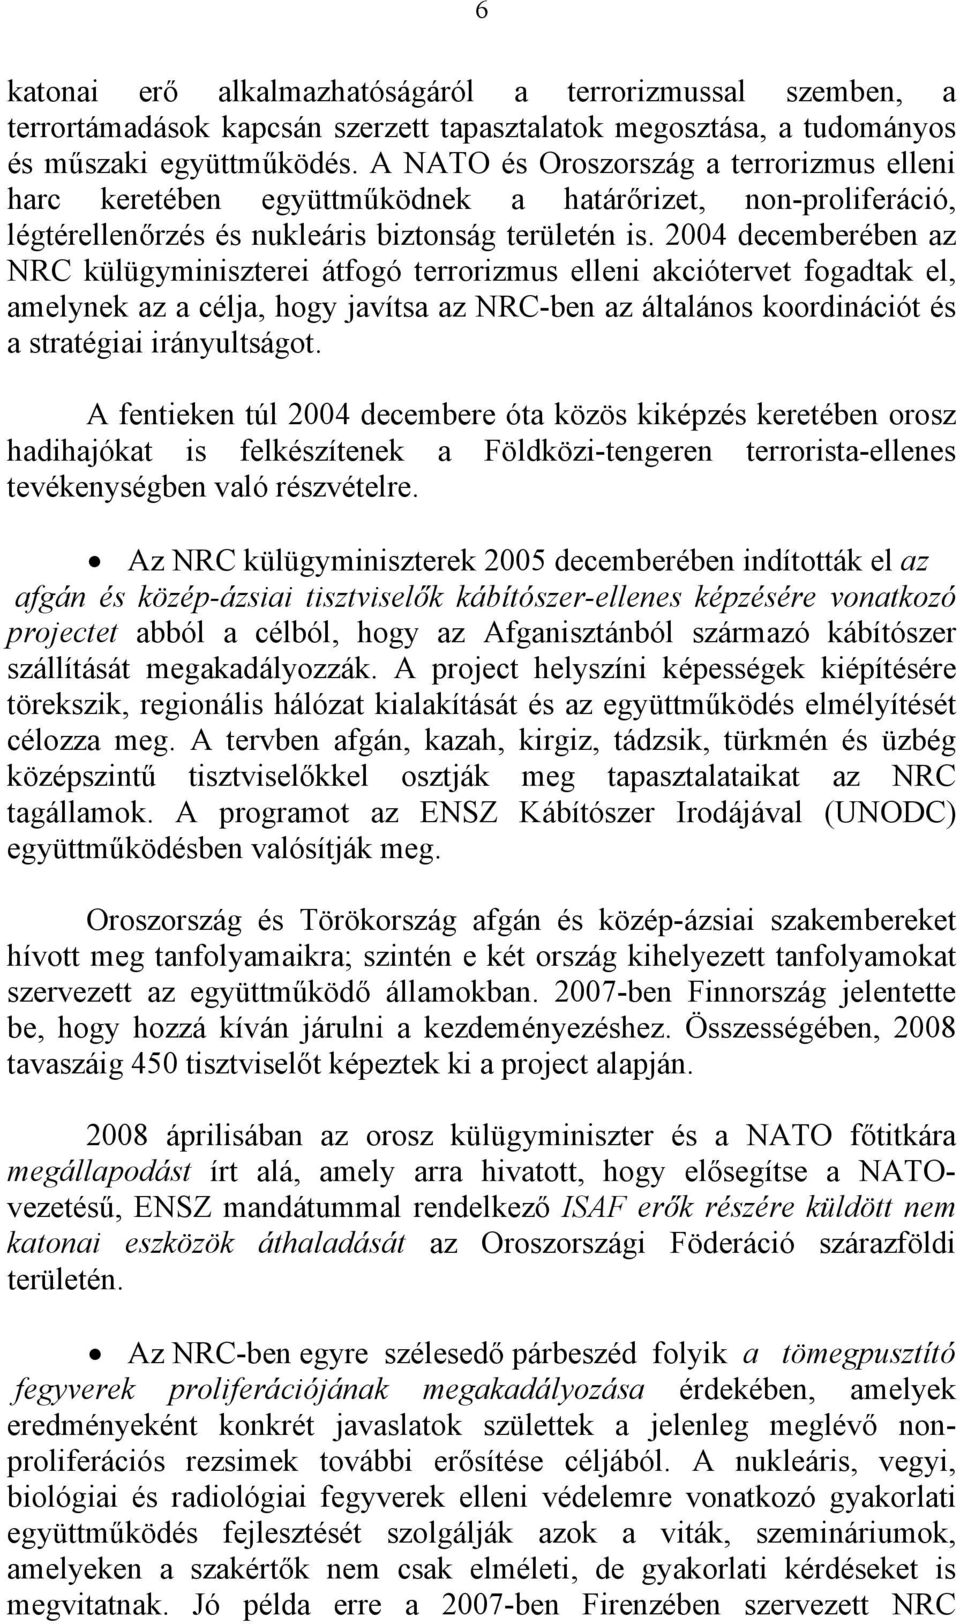 2004 decemberében az NRC külügyminiszterei átfogó terrorizmus elleni akciótervet fogadtak el, amelynek az a célja, hogy javítsa az NRC-ben az általános koordinációt és a stratégiai irányultságot.